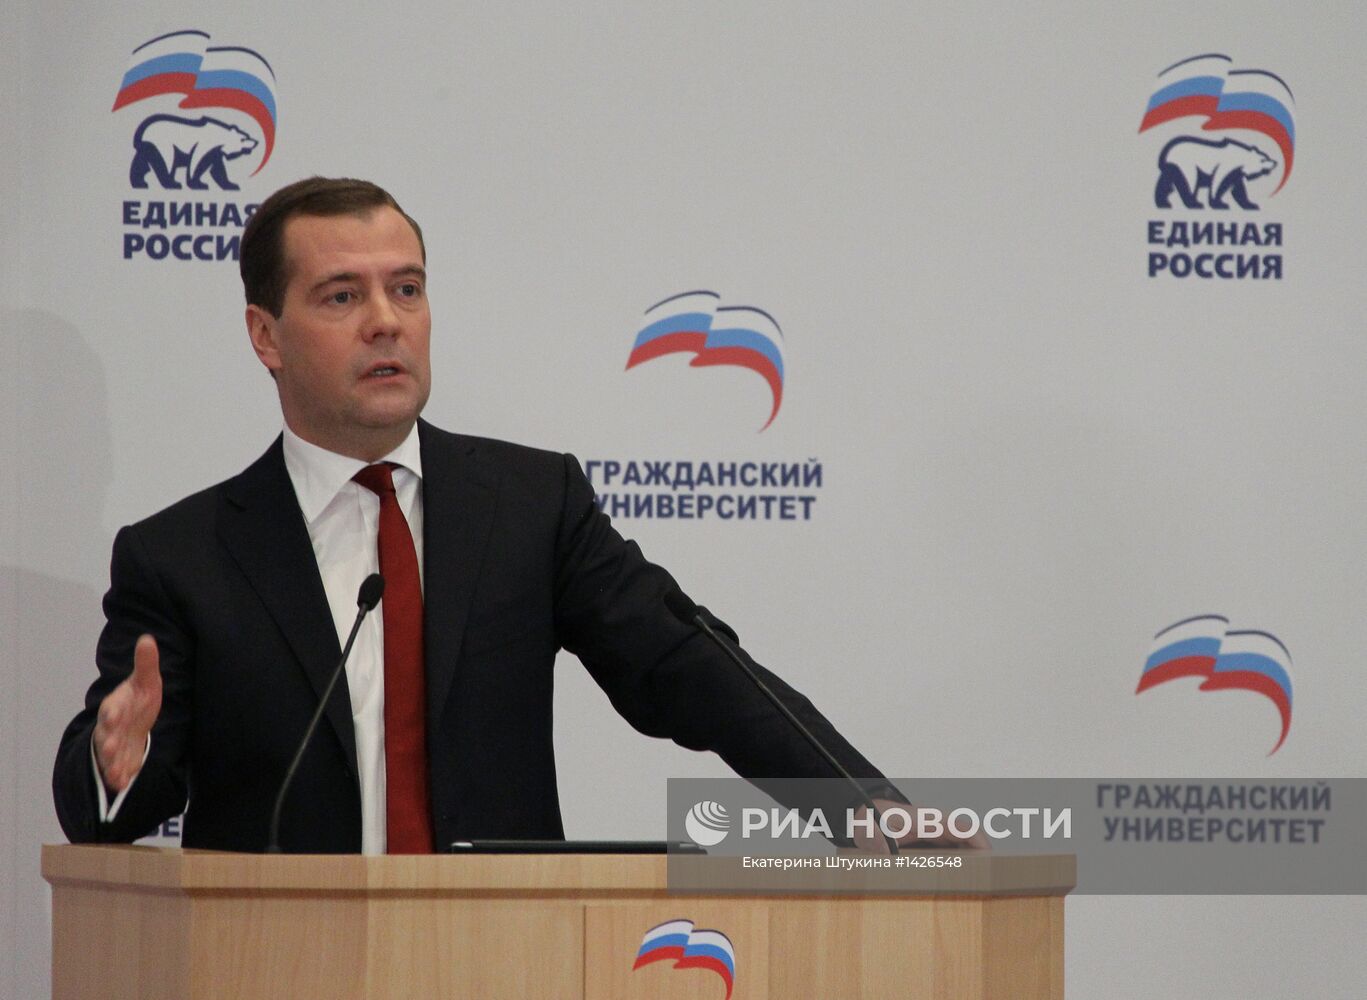 Д.Медведев на открытии проекта "Гражданский университет"